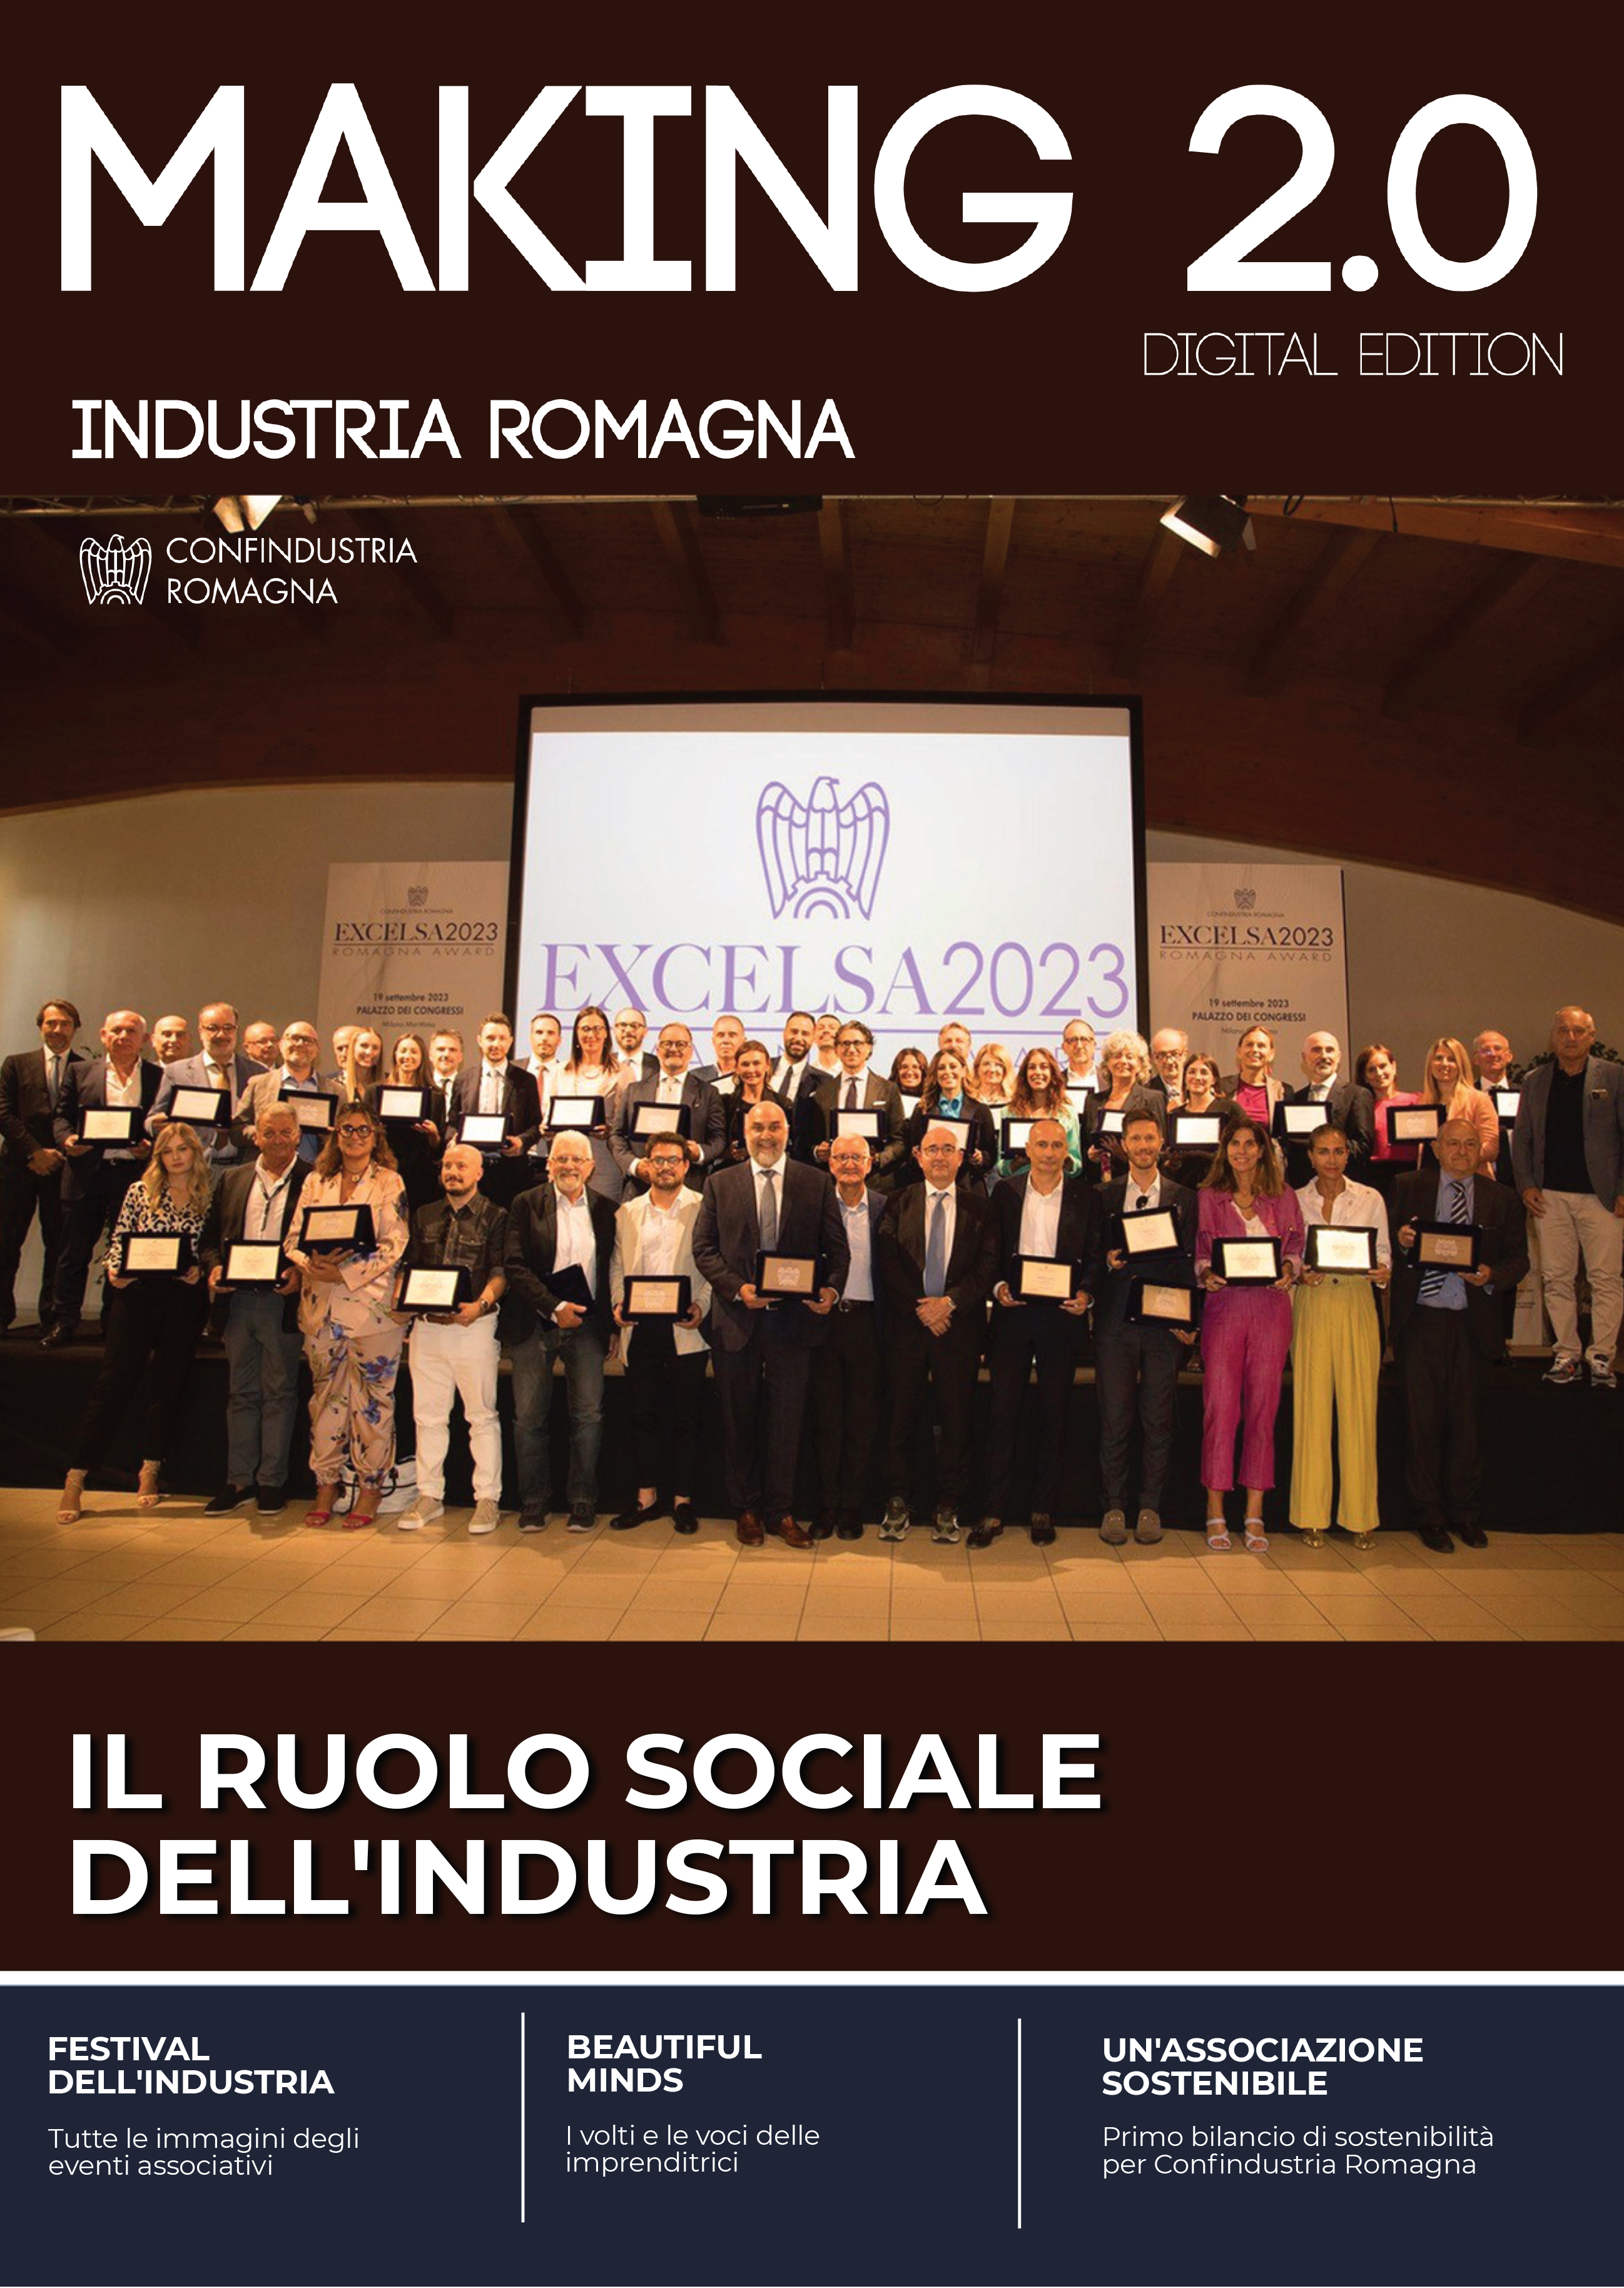 Il ruolo sociale dell'industria